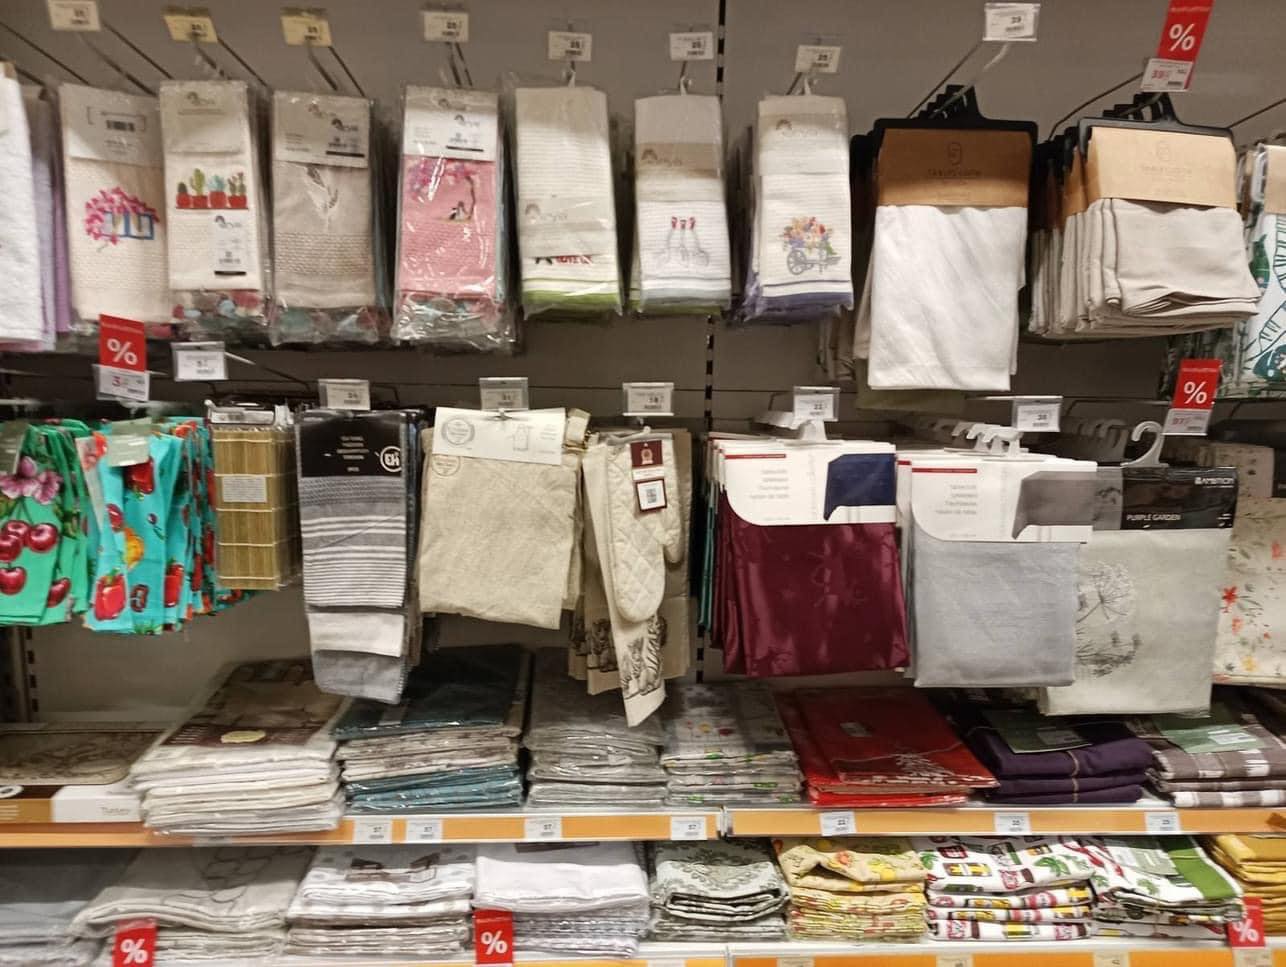 Текстиль з Чернігова можна зустріти у найбільшій мережі гіпермаркетів Грузії